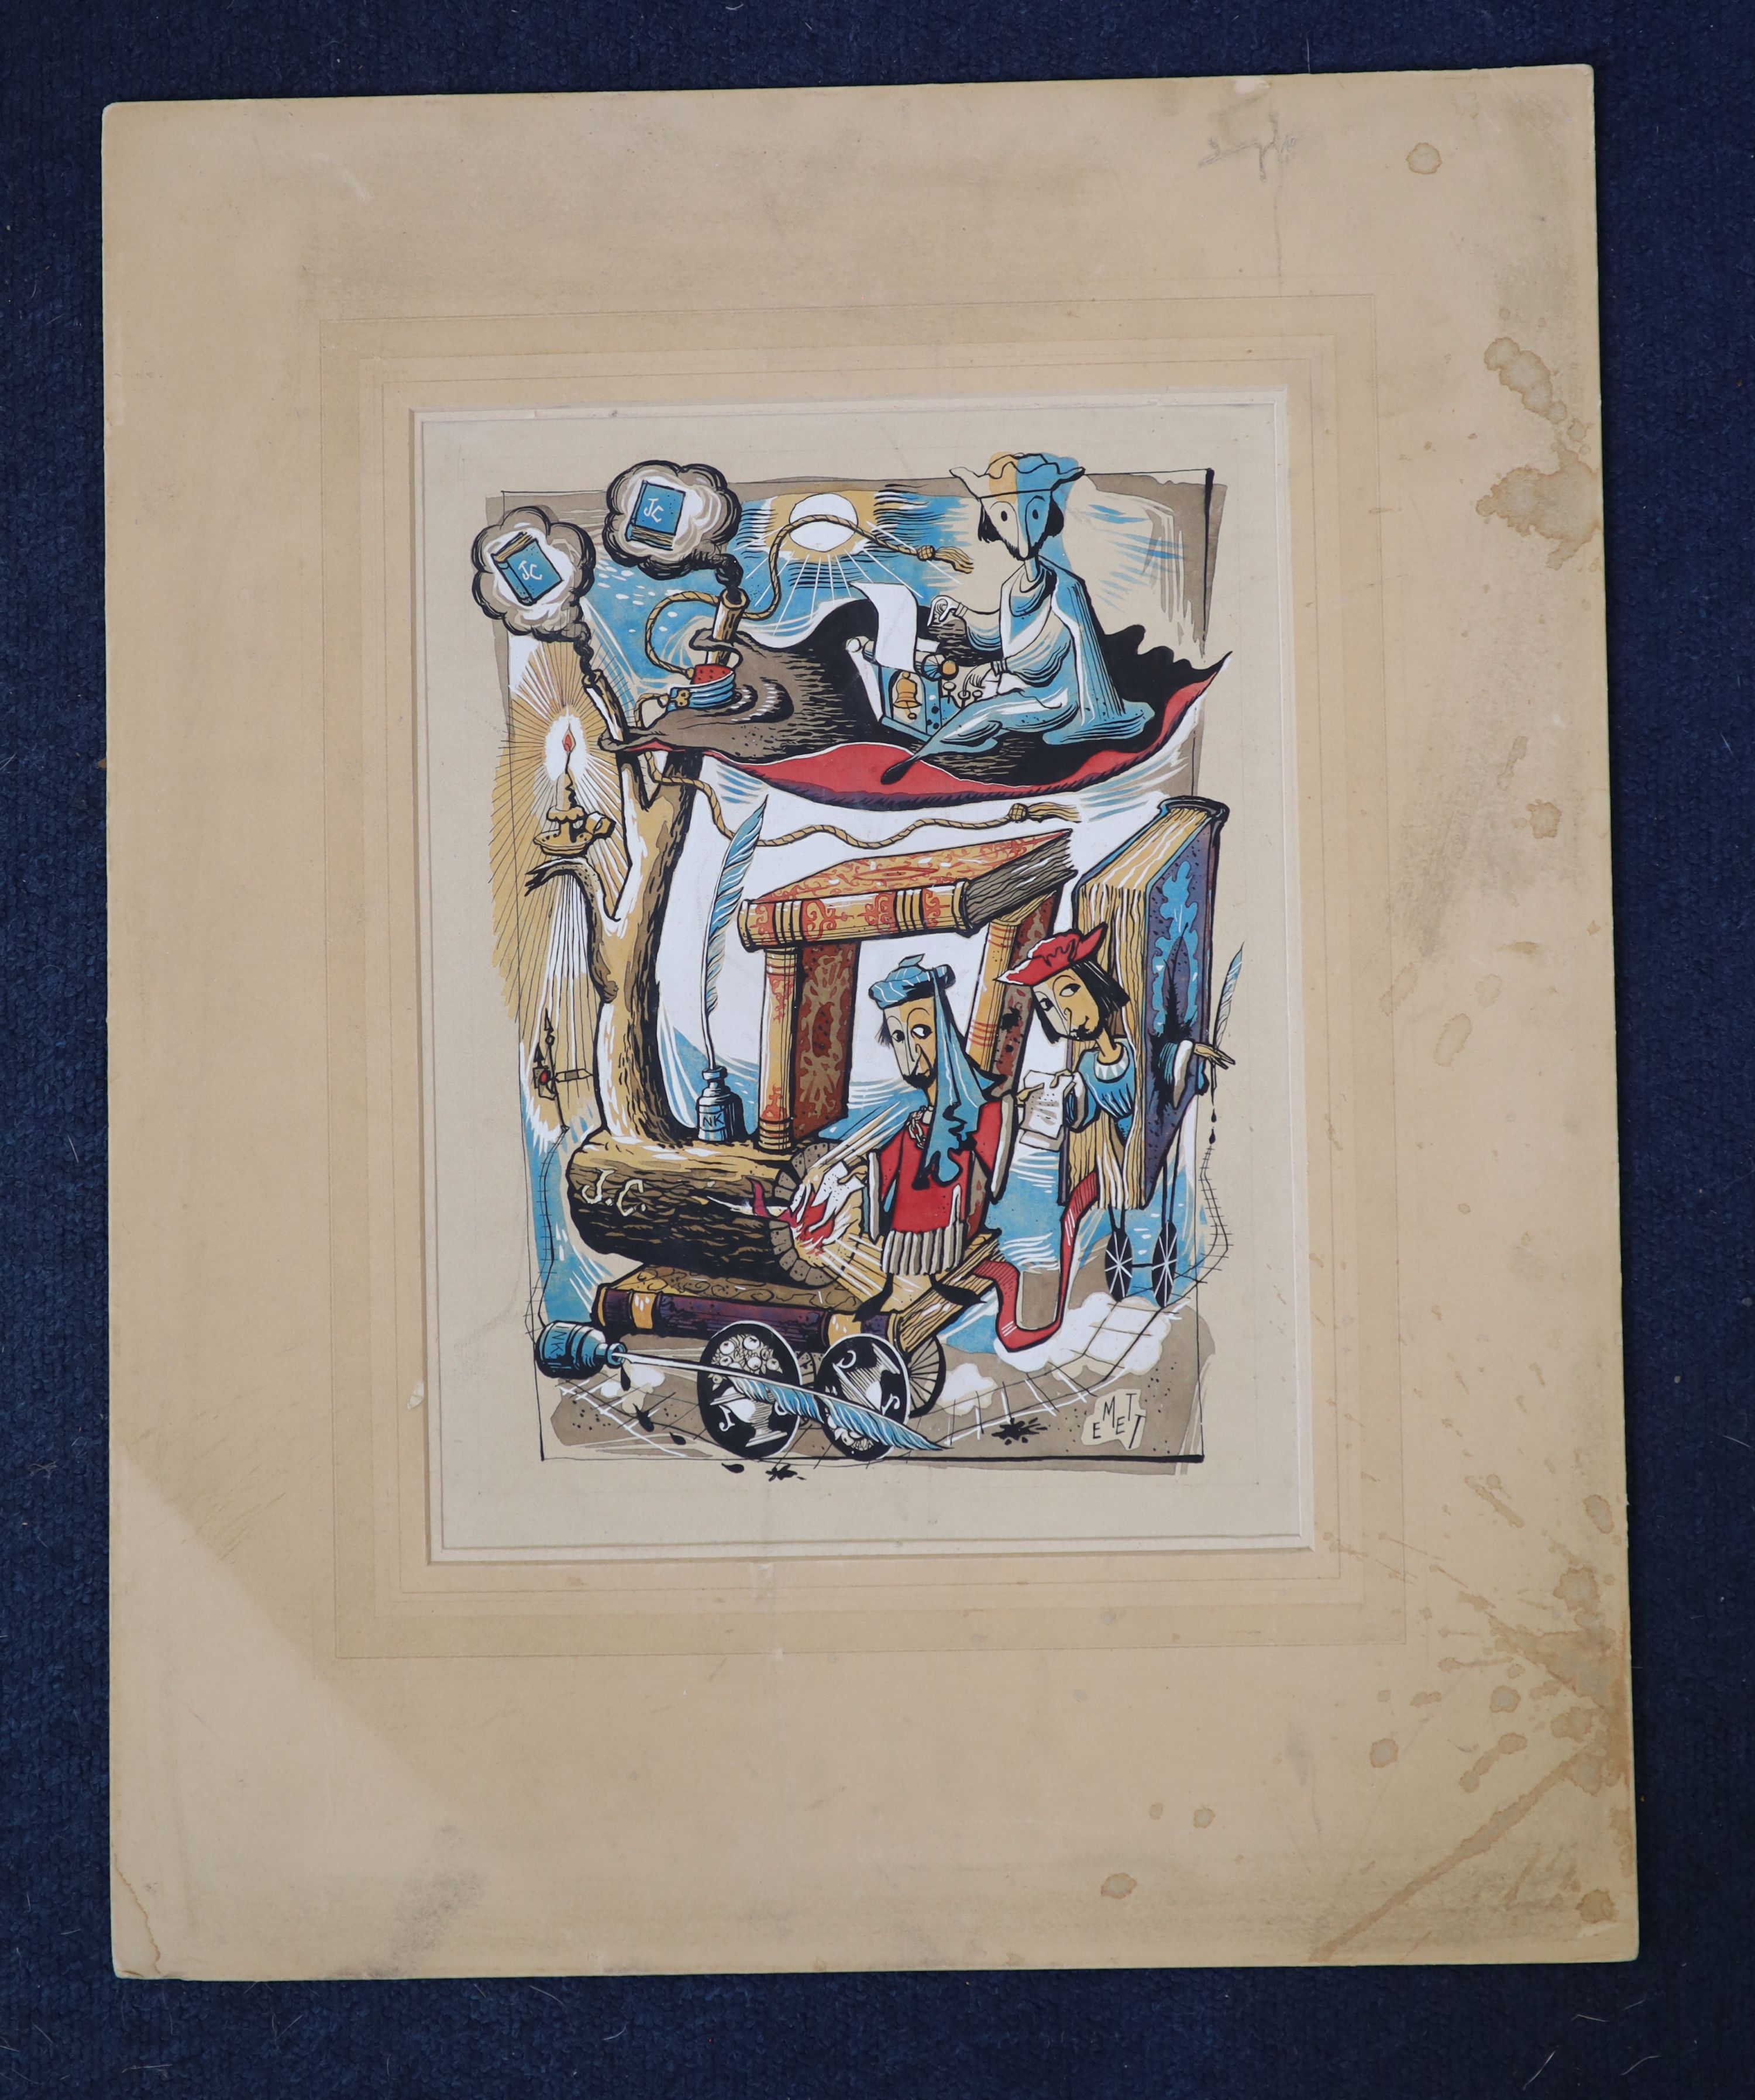 Rowland Emett (1906-1990), Artwork for Jonathan Cape, Ink and gouache on paper, 30.5 x 23cm. Unframed